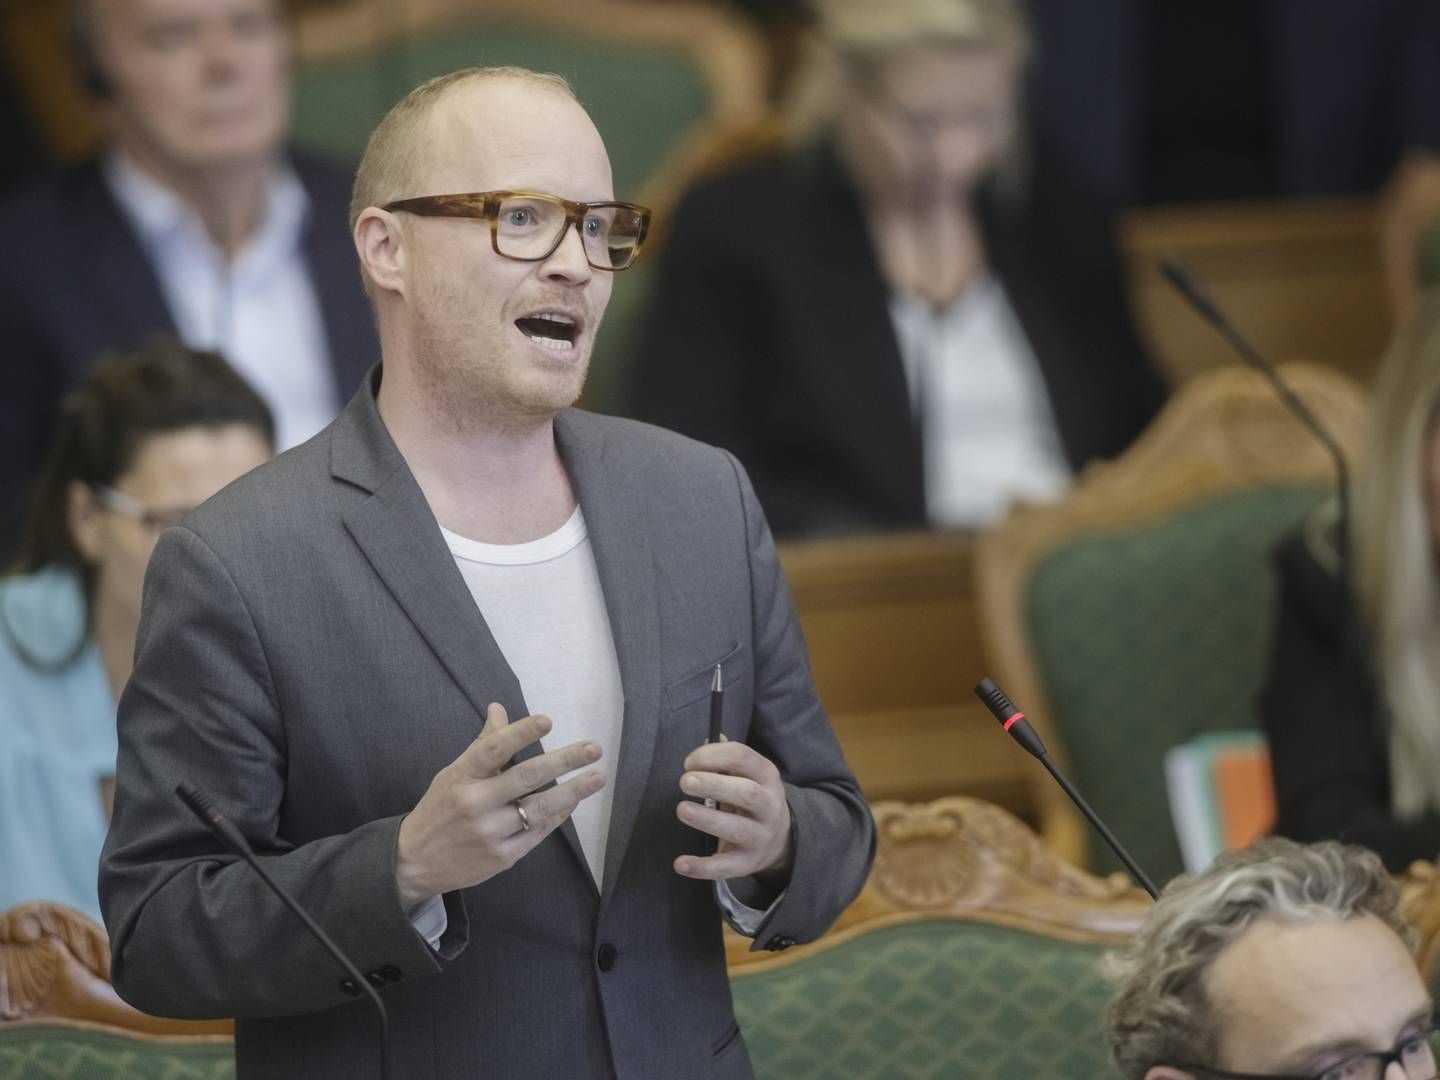 SF’s landbrugsordfører, Rasmus Nordqvist mener ikke, at det er en god idé at udsætte braklægningen af landbrugsjord. | Foto: Mads Nissen